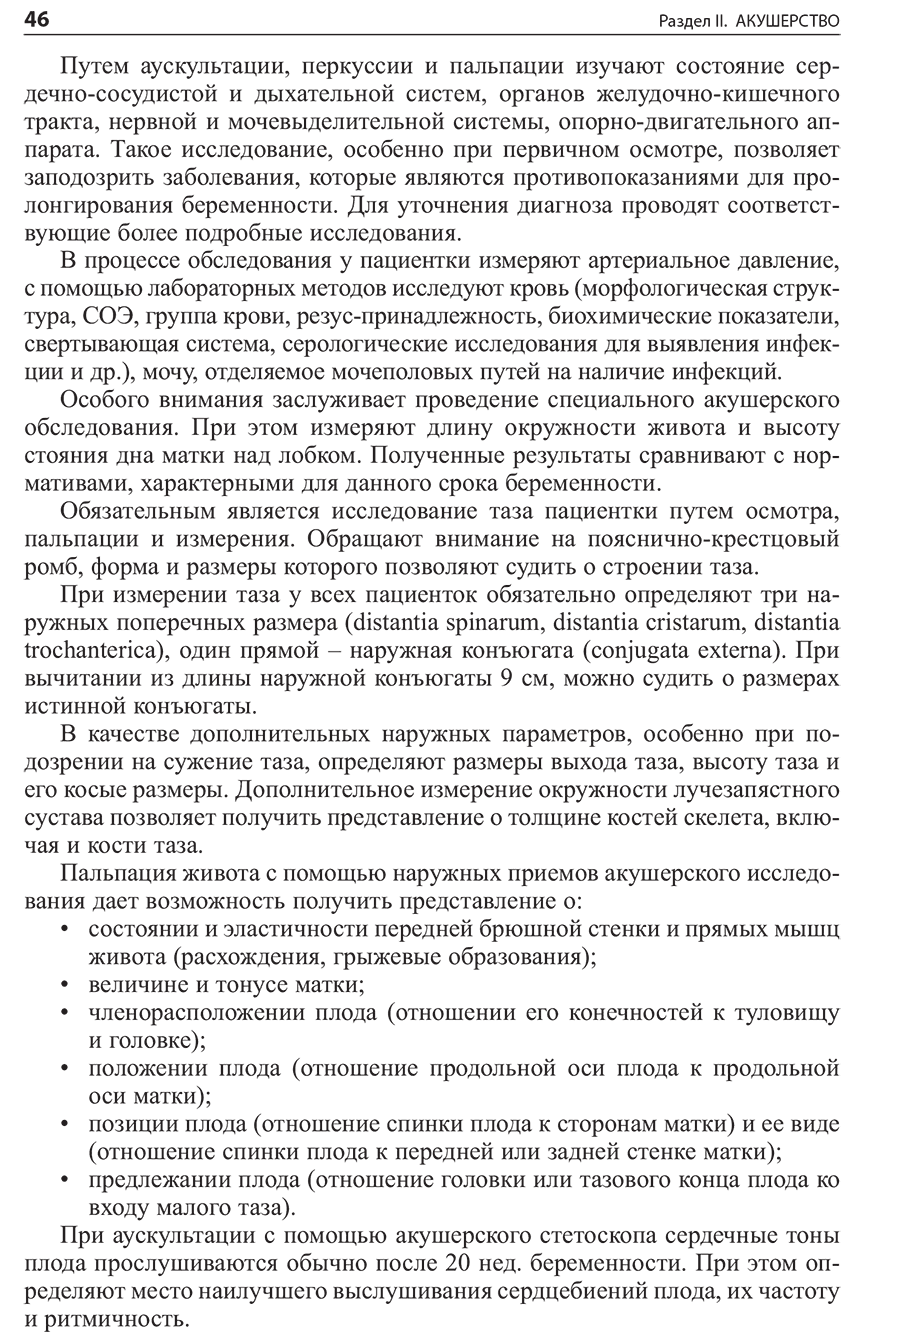 Пример страницы из книги "Амбулаторно-поликлиническая помощь в акушерстве и гинекологии" - Сидорова И. С.